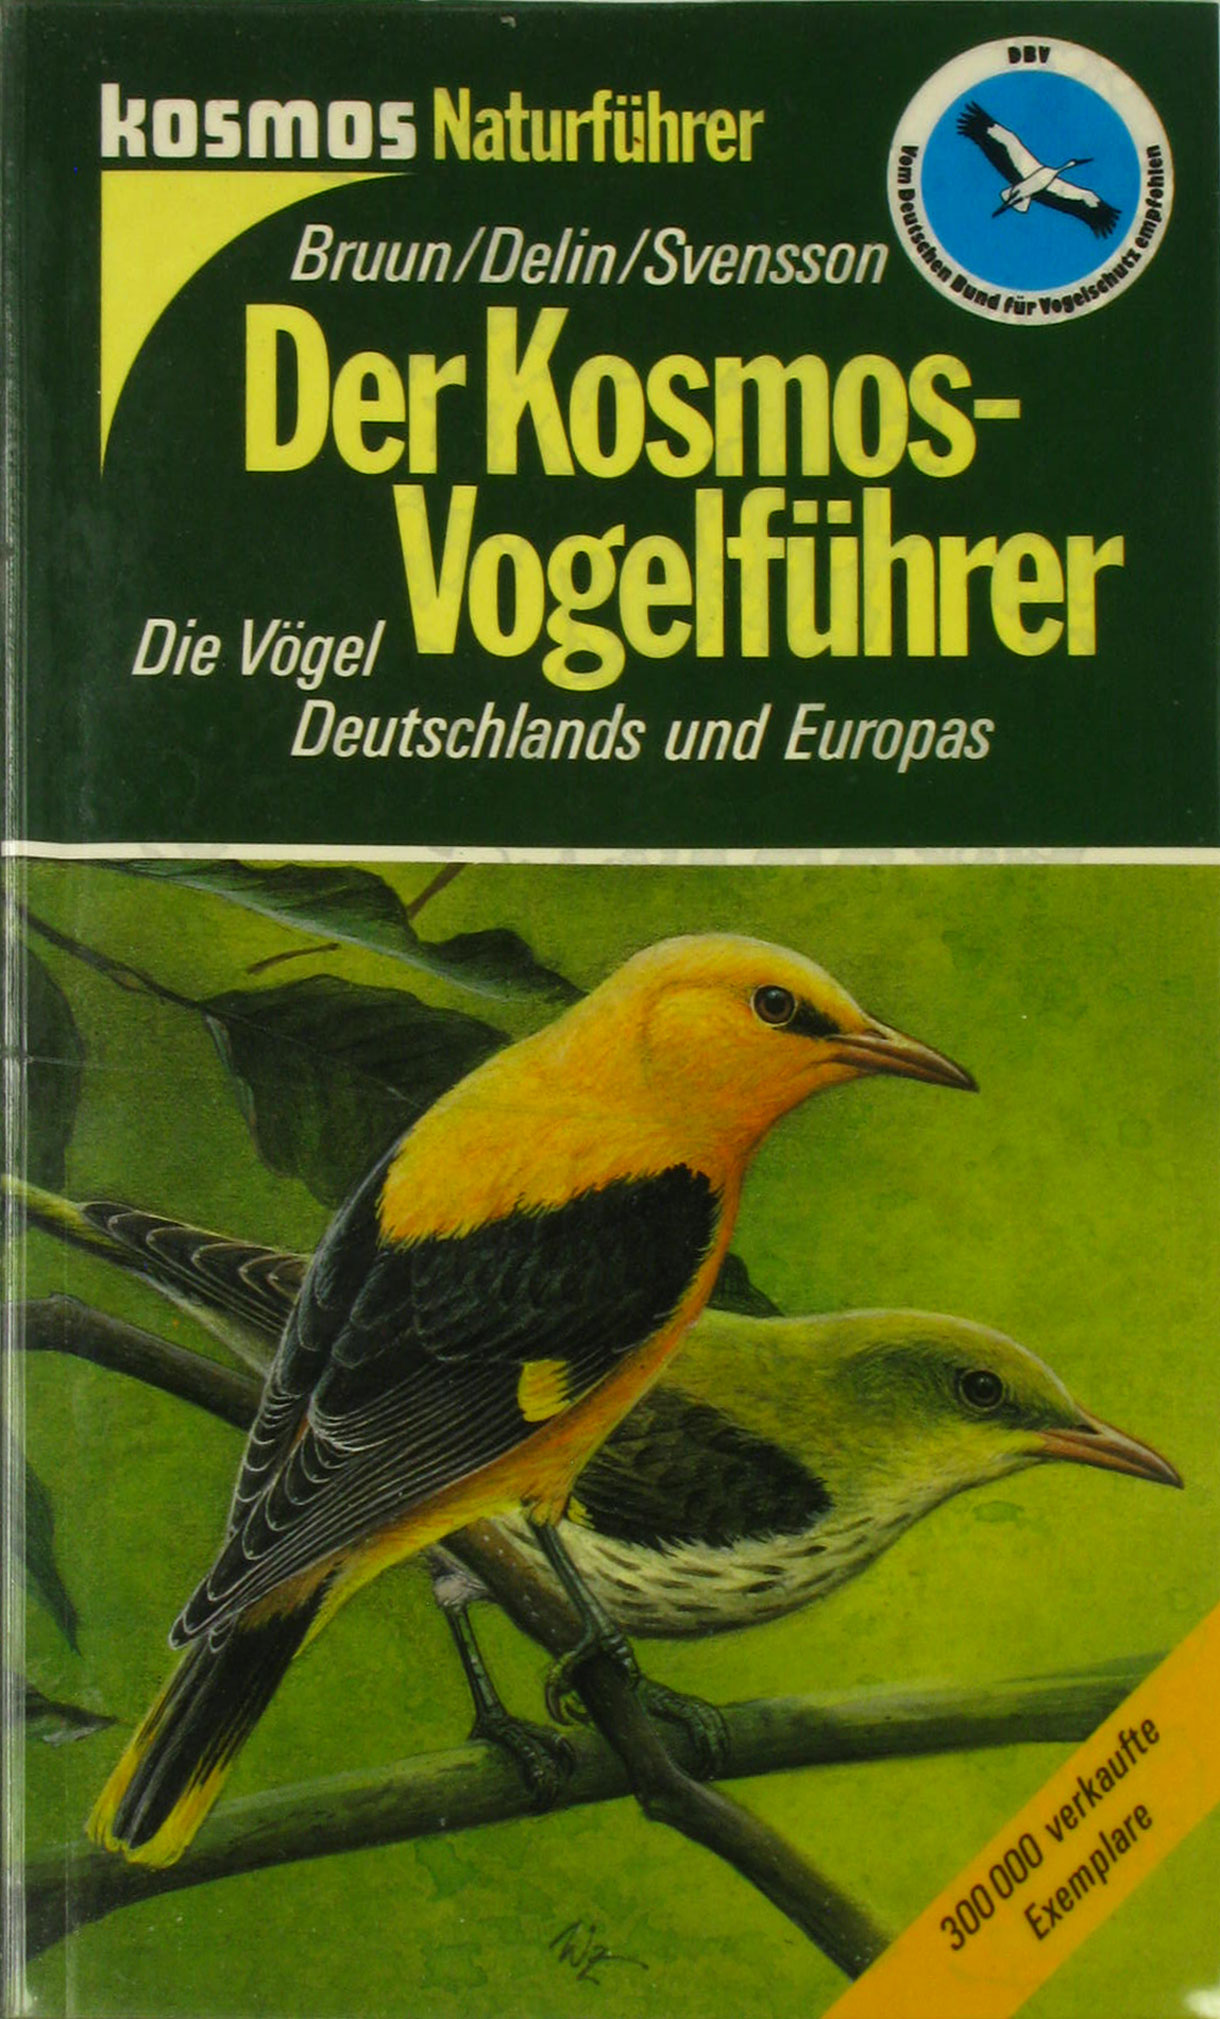 Bruun, Bertel, Hakan Delin und Lars Svensson:  Der Kosmos-Vogelführer. Die Vögel Deutschlands und Europas. 